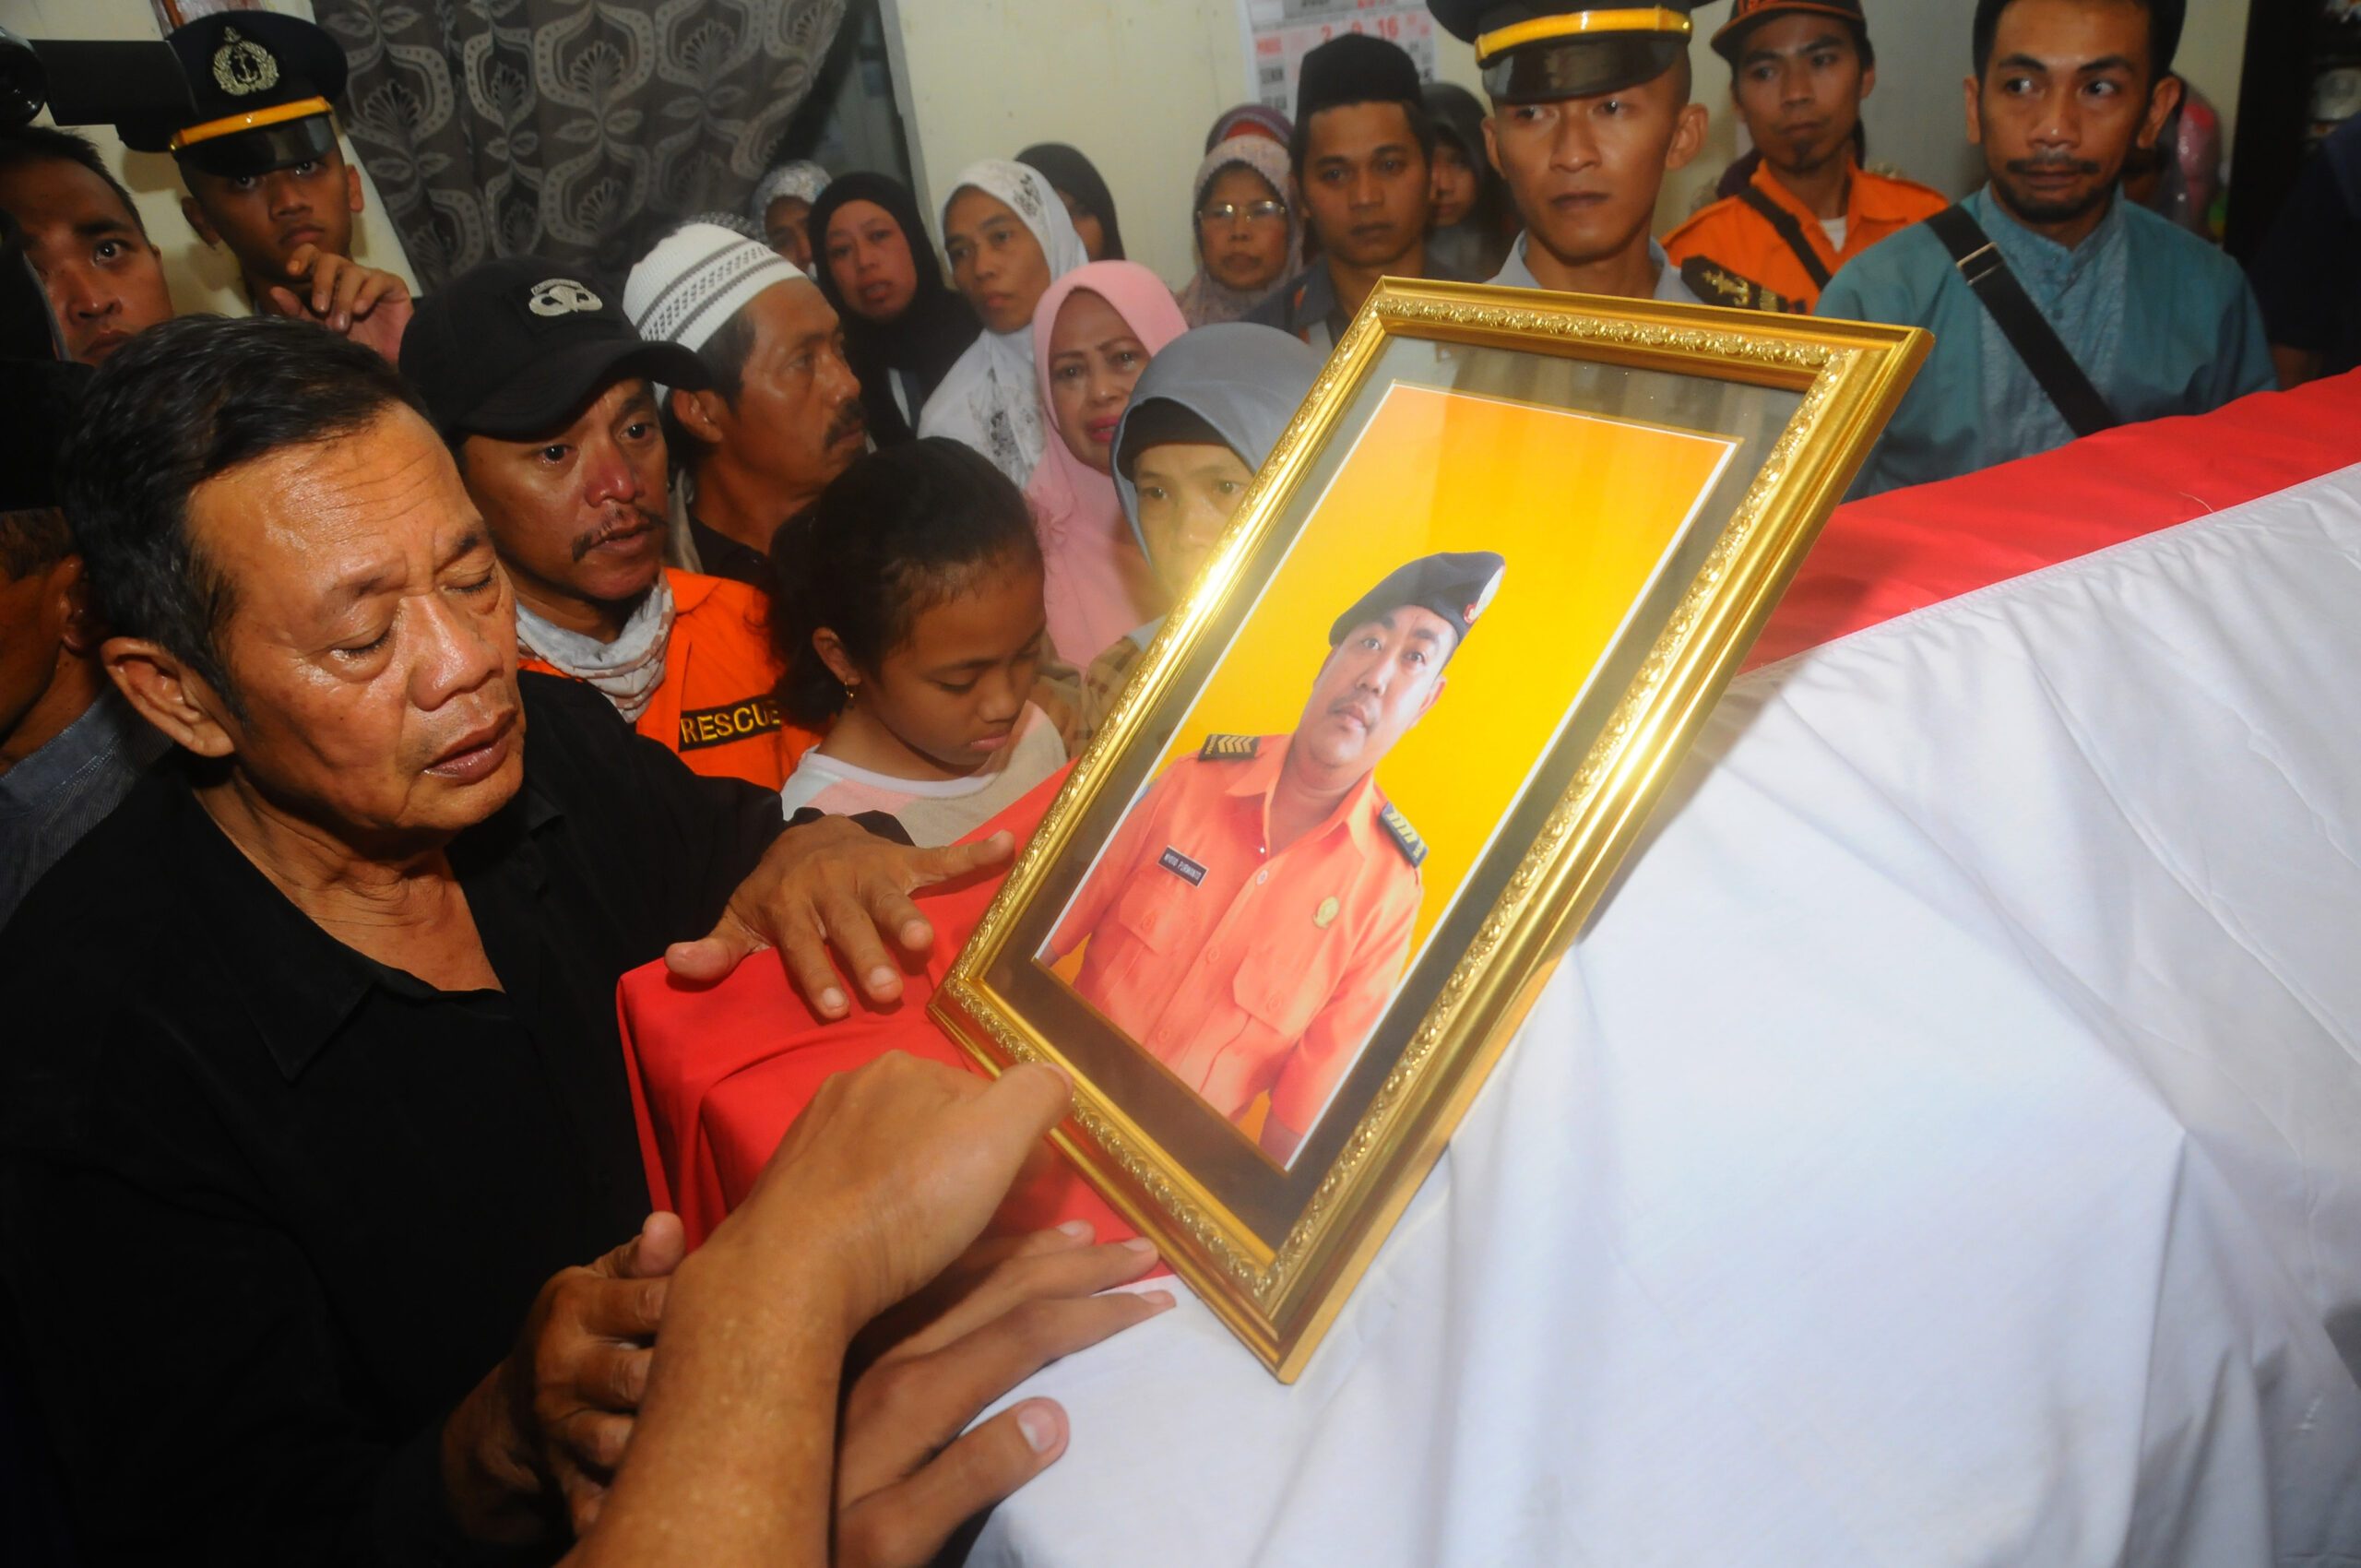 Mengenang Nyoto Purwanto, anggota Basarnas yang tewas dalam kecelakaan helikopter